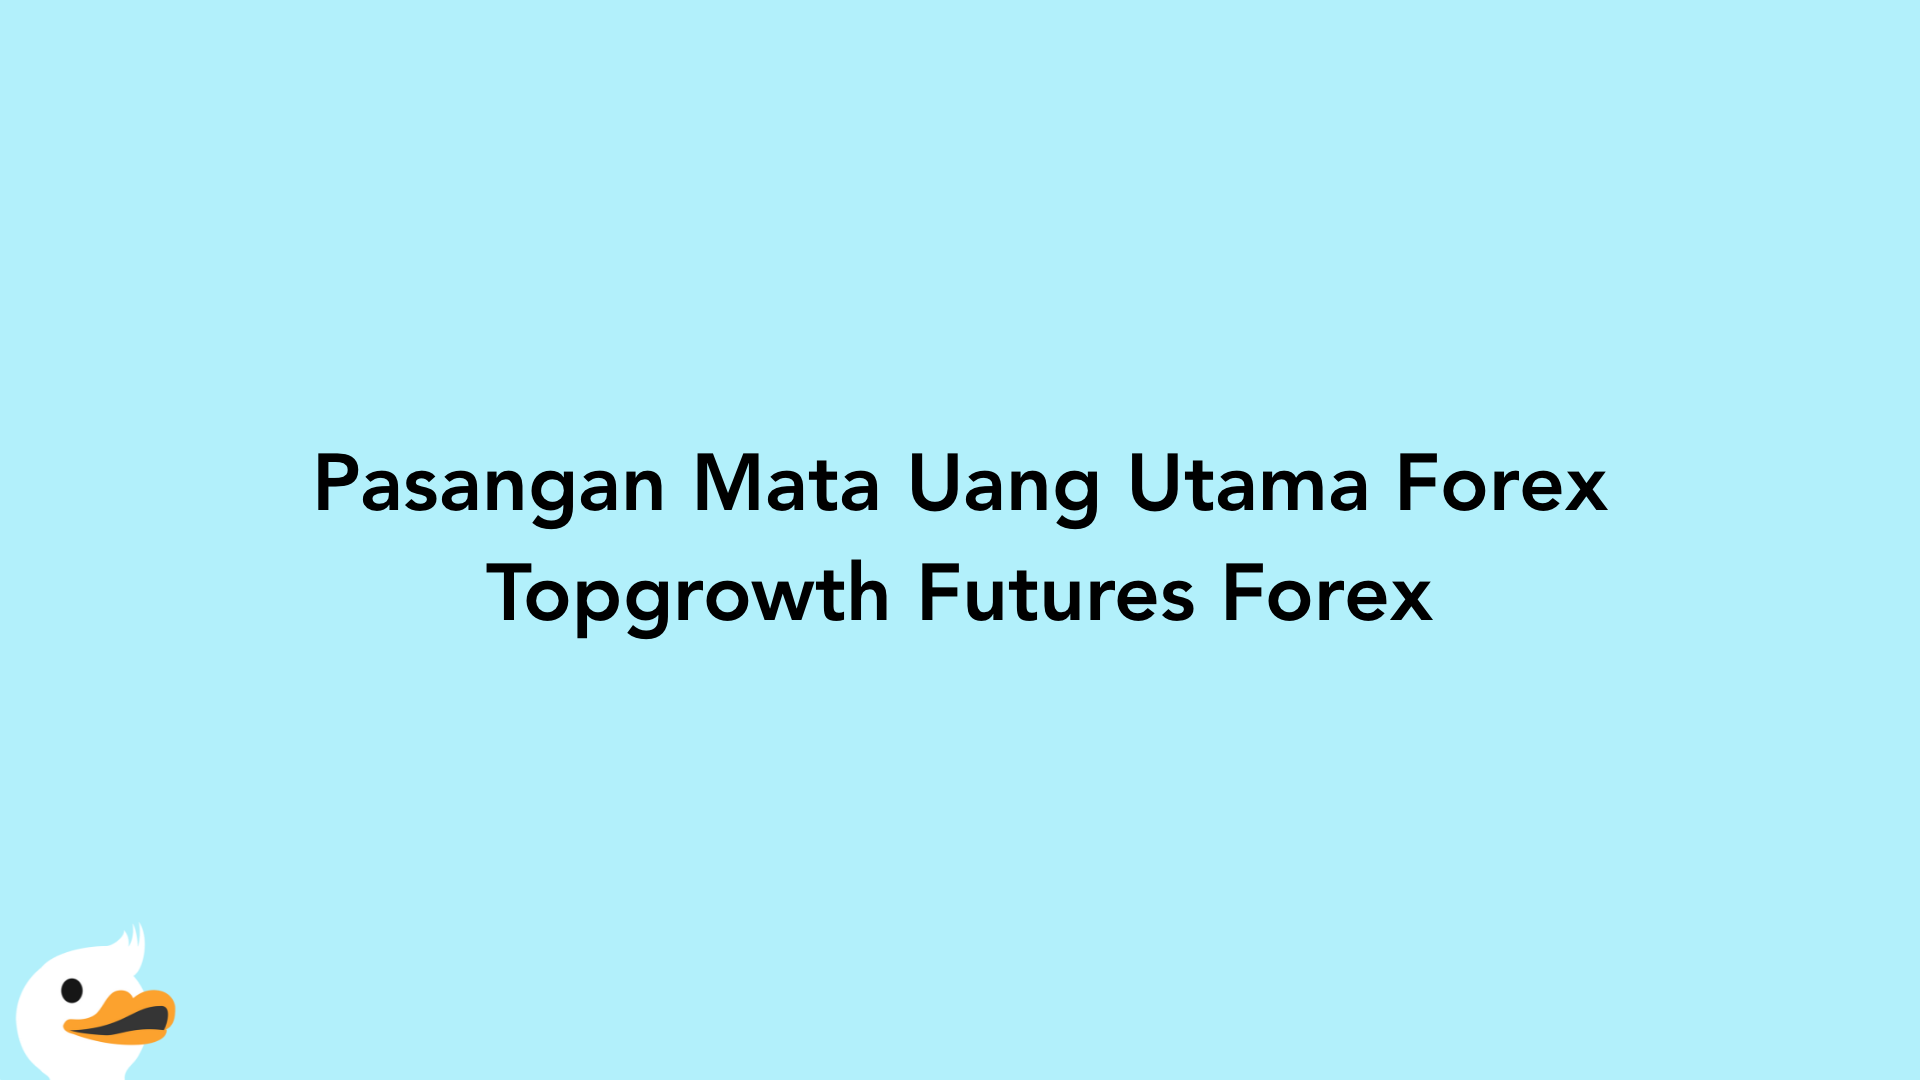 Pasangan Mata Uang Utama Forex Topgrowth Futures Forex